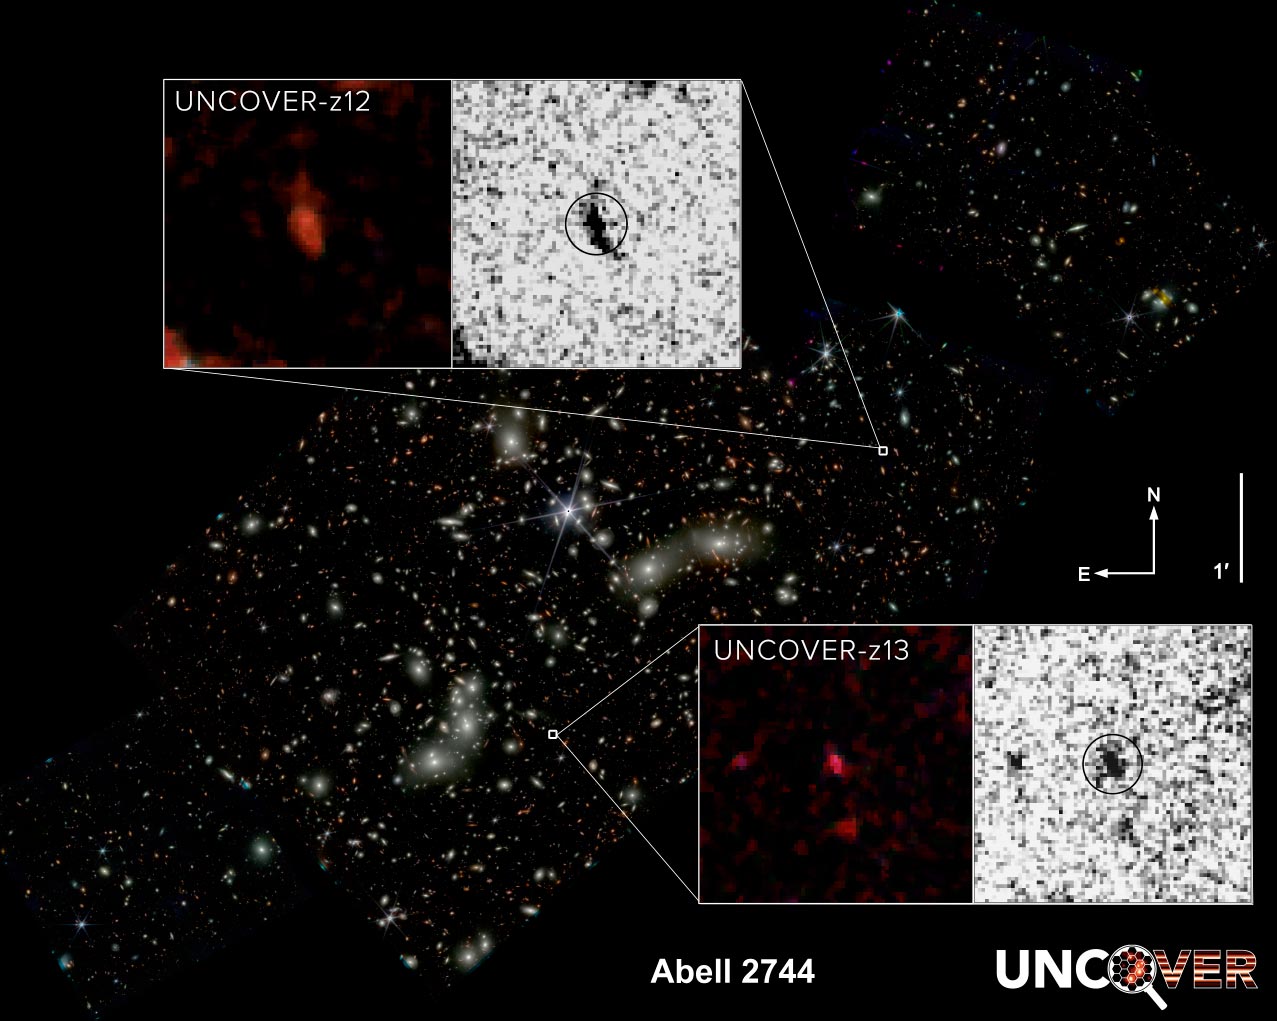 ウェッブ宇宙望遠鏡、天文学の理論に反する銀河を発見